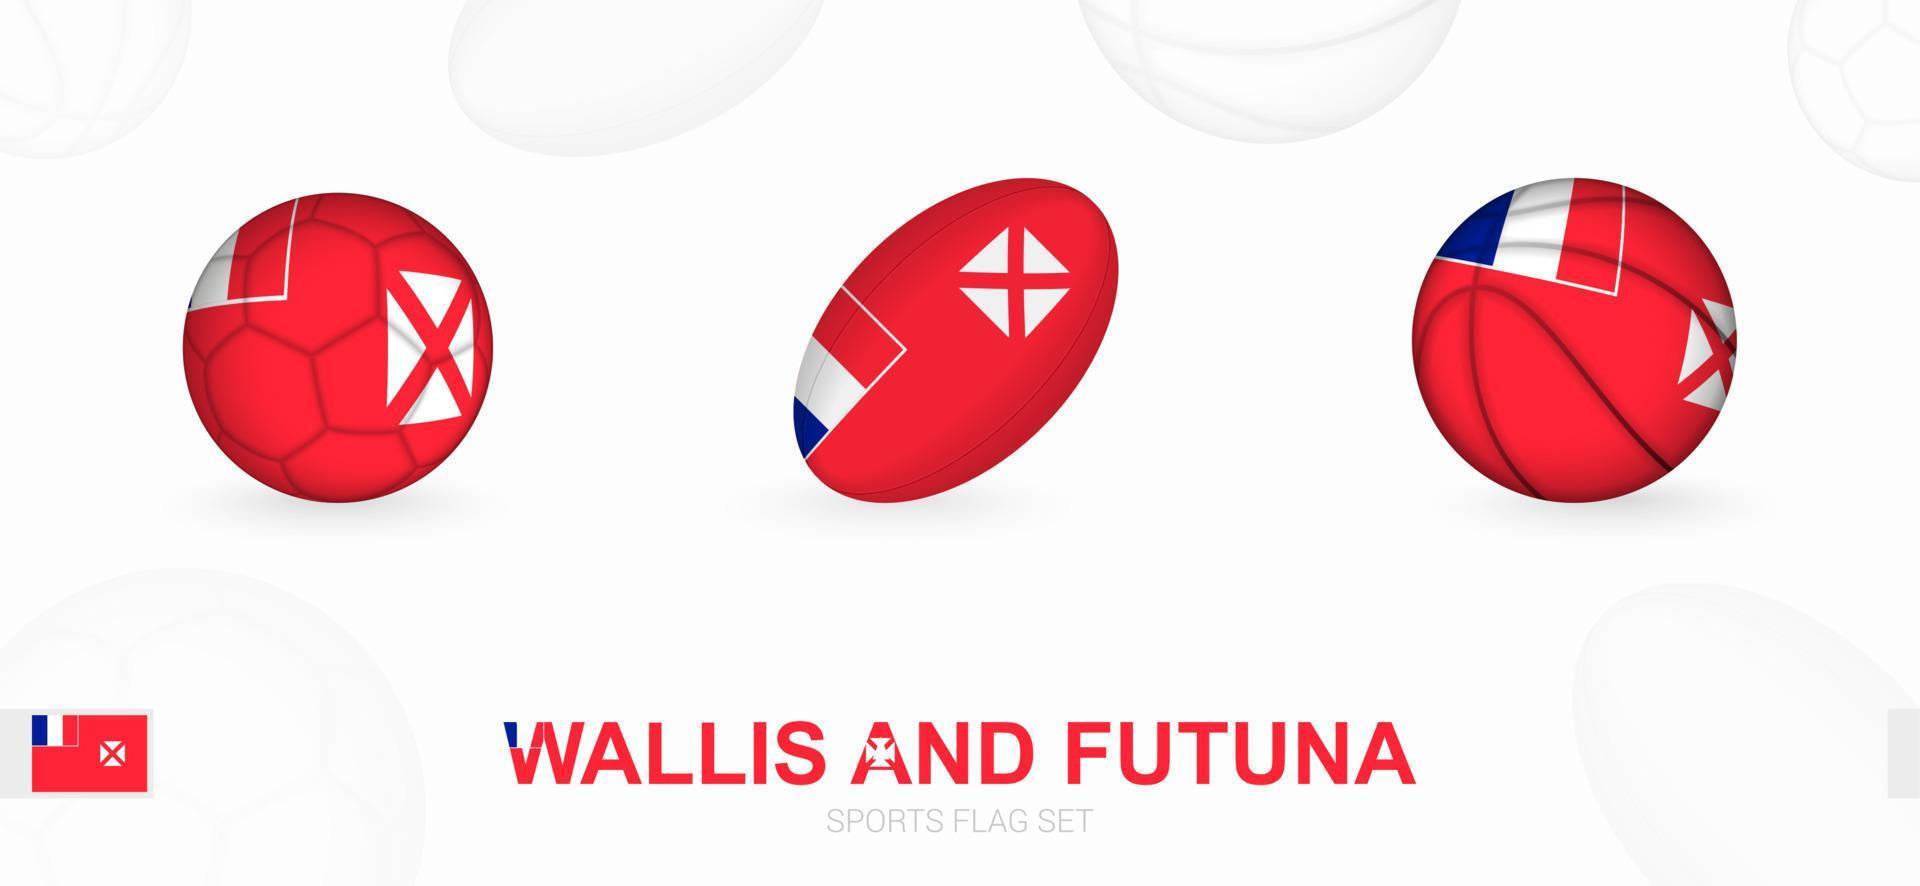 Deportes íconos para fútbol, rugby y baloncesto con el bandera de Wallis y futuna. vector